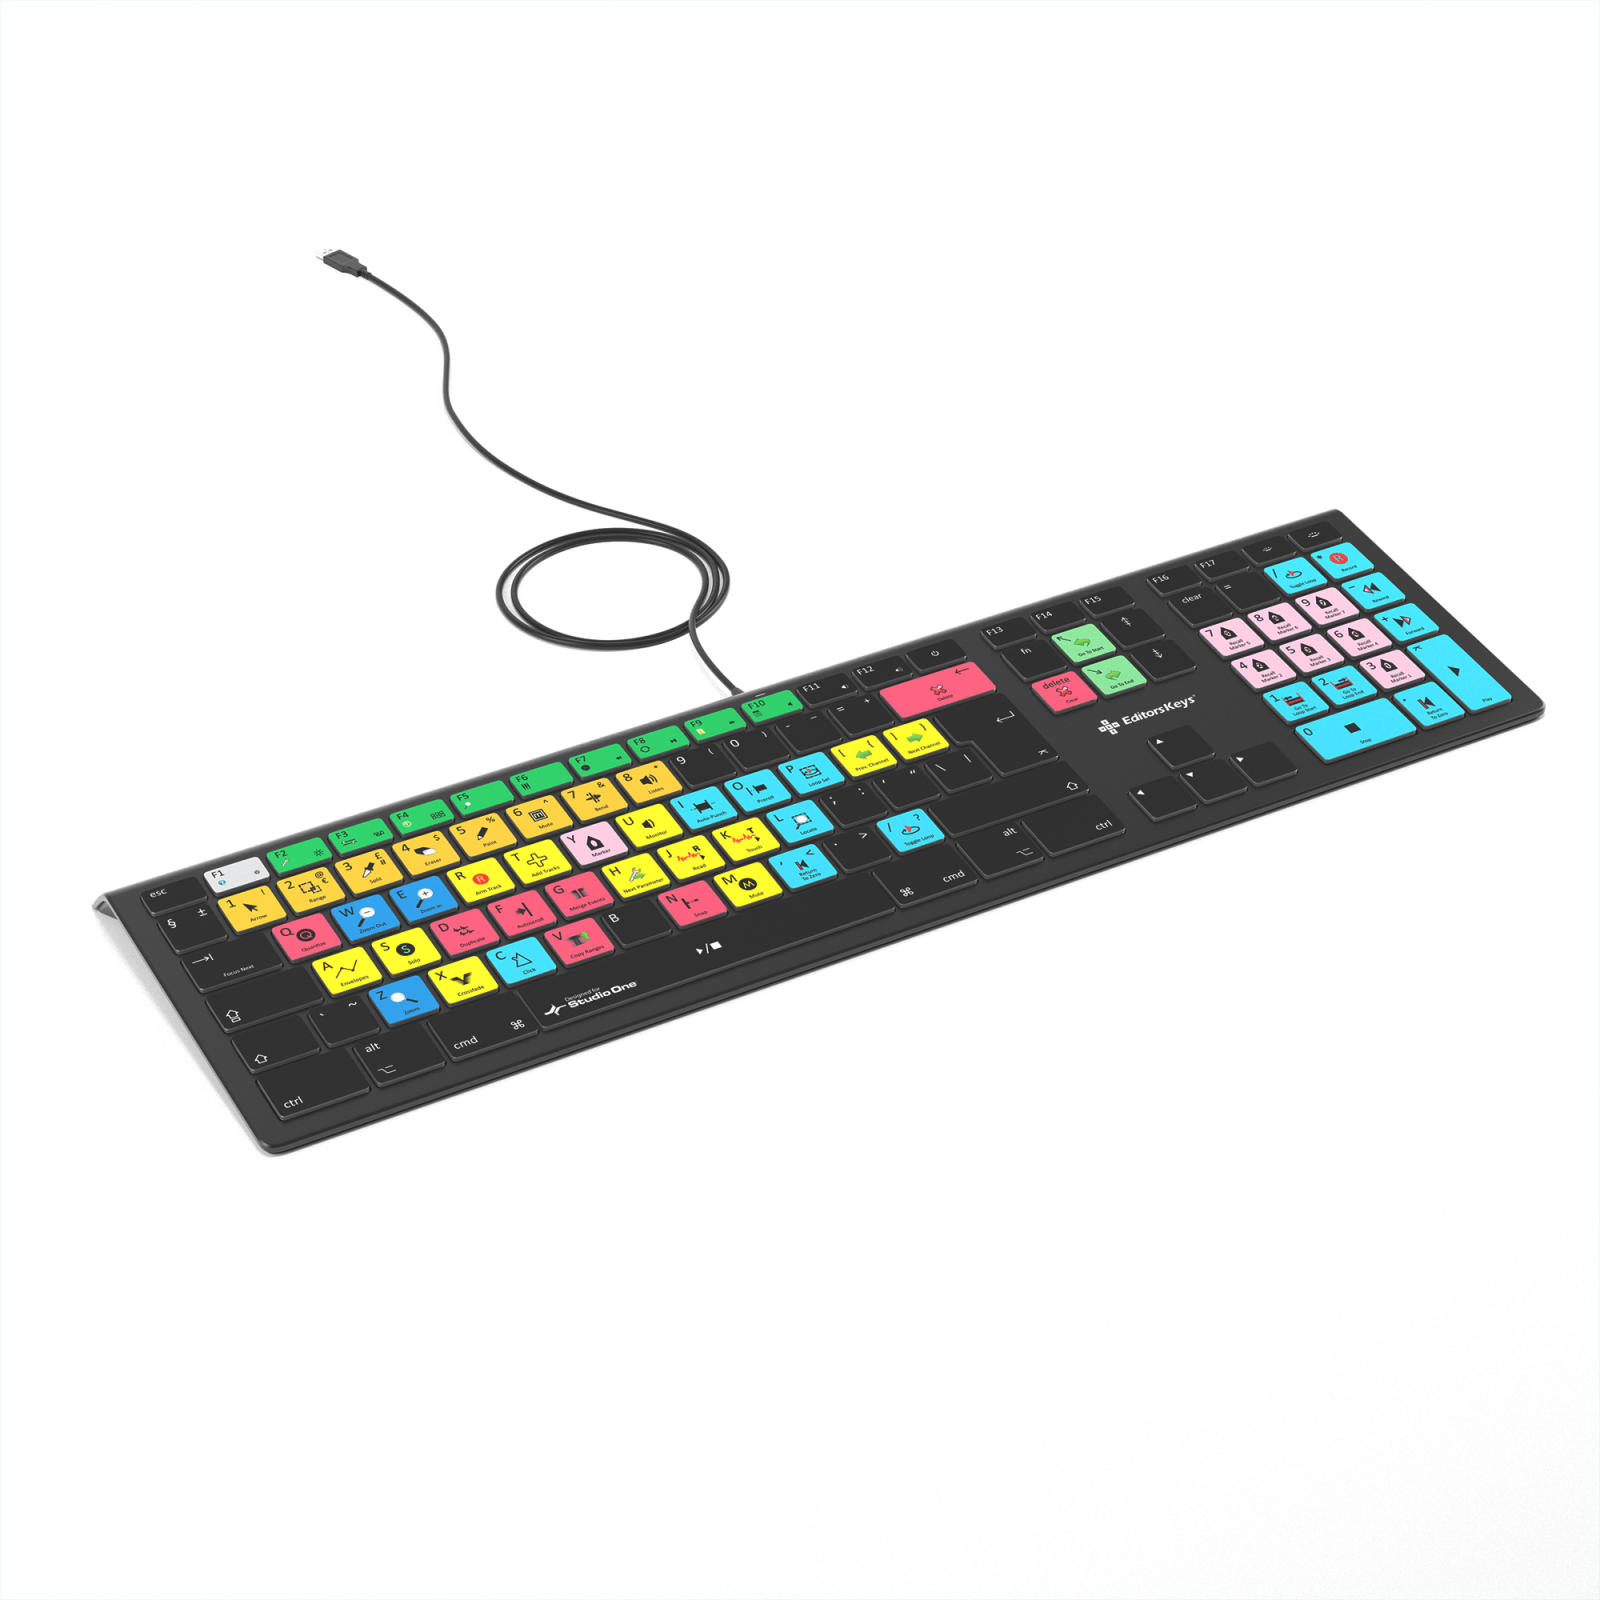 Presonus Studio One Keyboard - Backlit Keyboard for Mac & PC